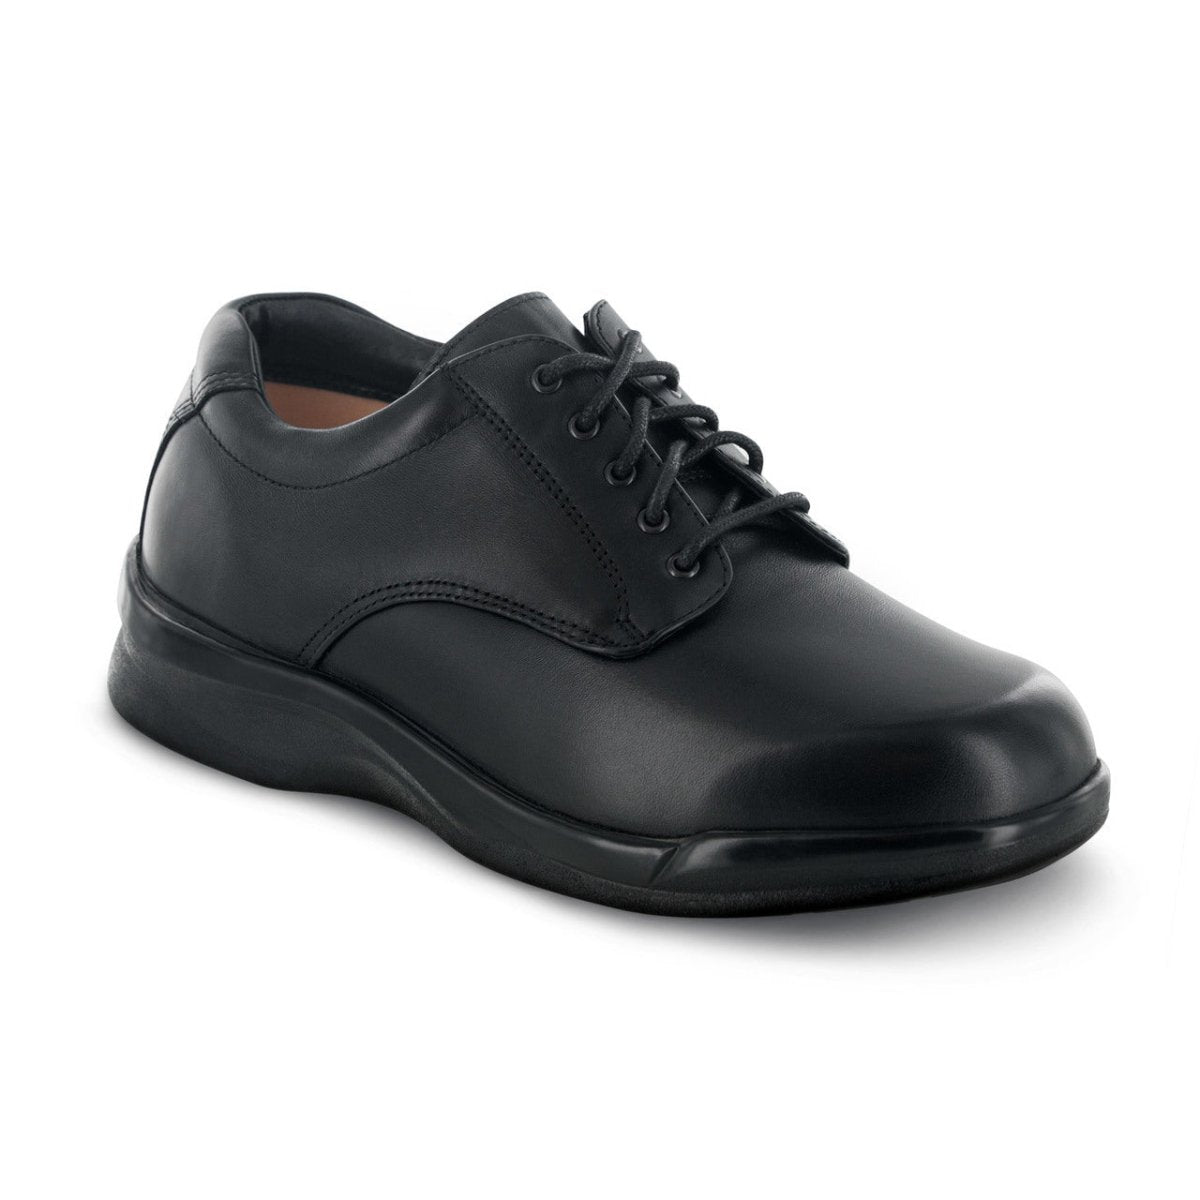 APEX 1270M AMB CONFORM LACE MEN'S DRESS SHOE IN BLACK - TLW Shoes